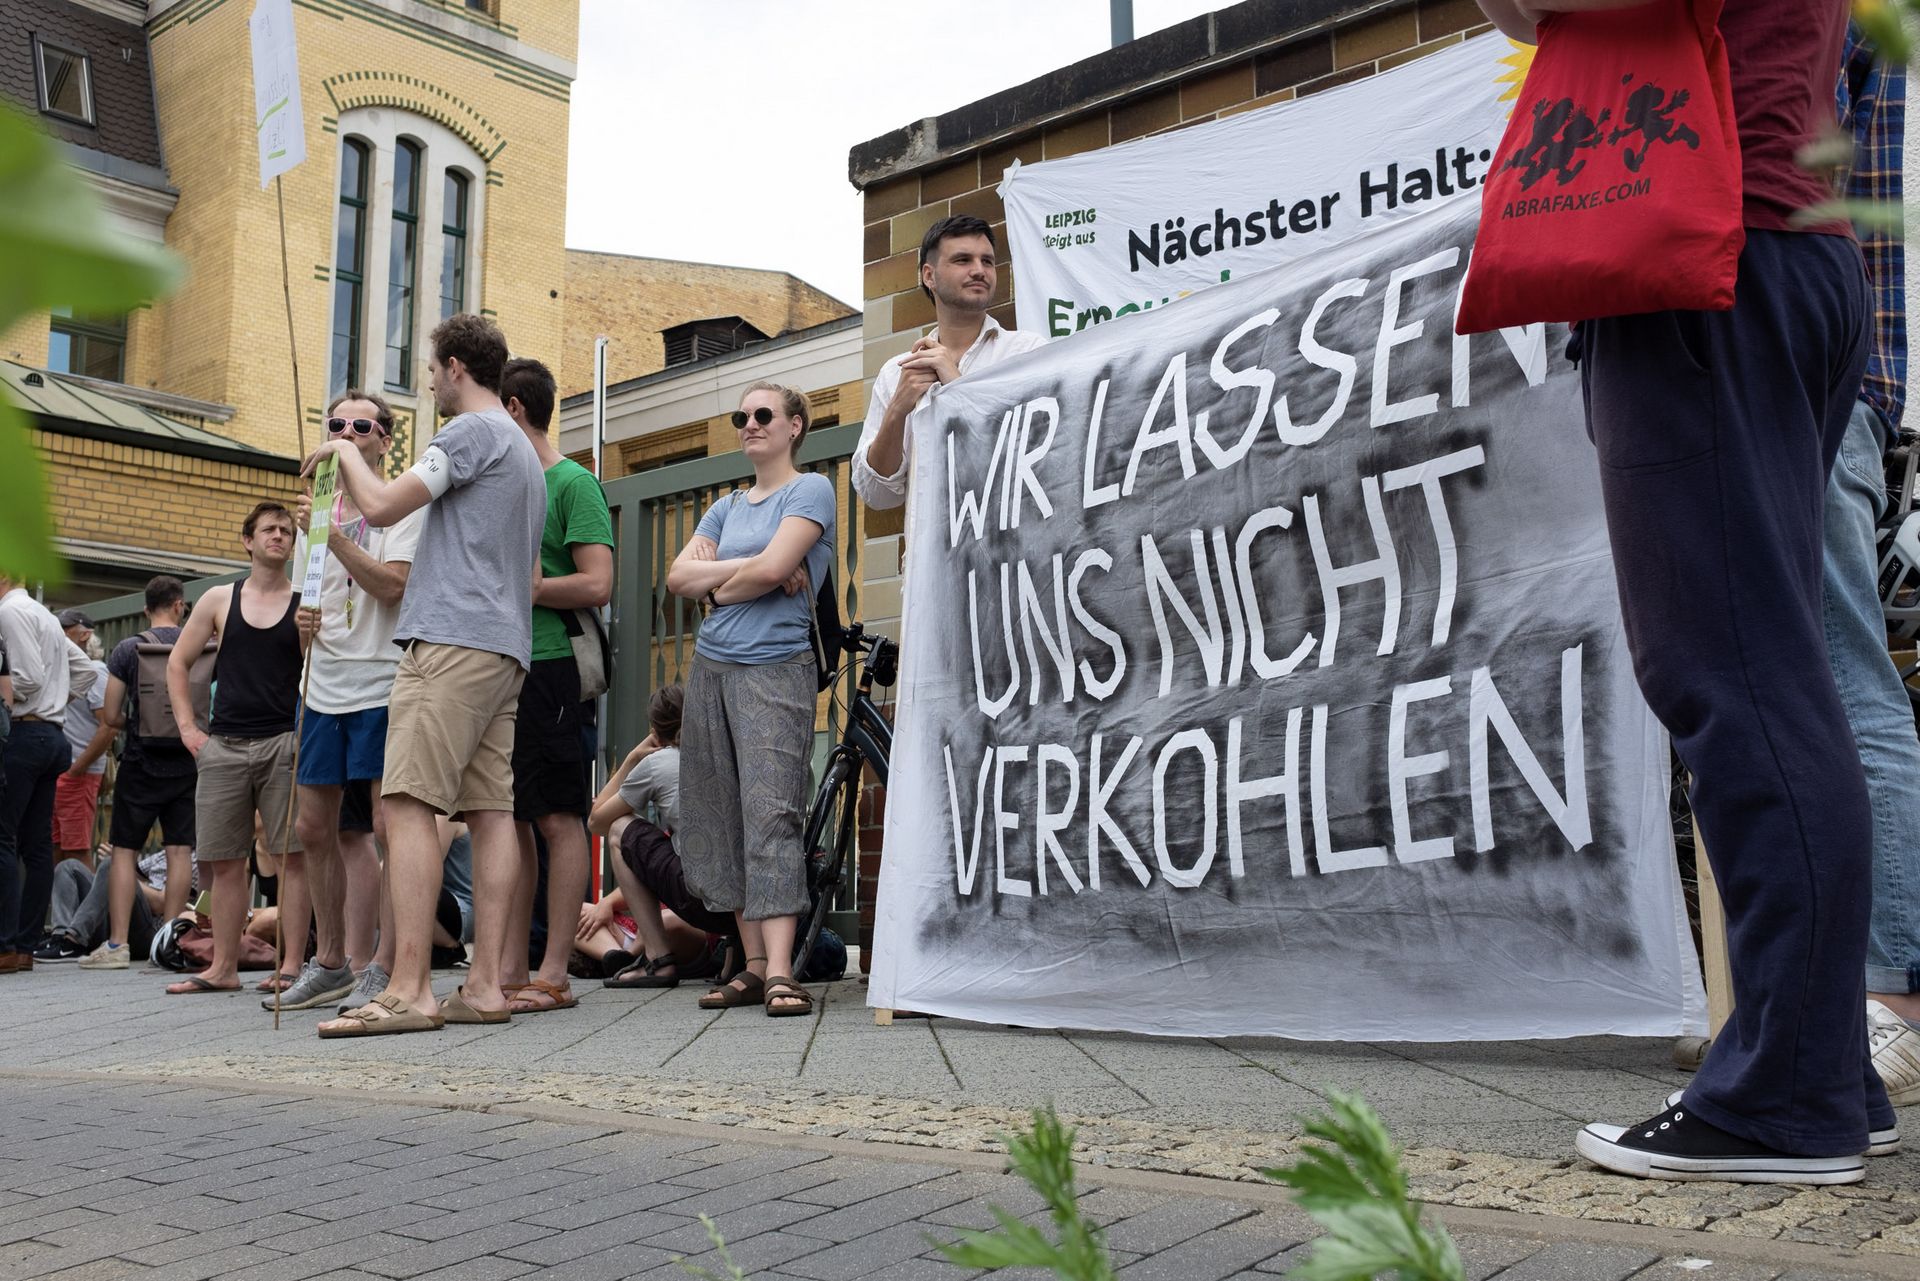 Menschen demonstrieren vor Stadtwerken, zwei halten ein Banner auf dem steht: "Wir lassen uns nicht verkohlen"